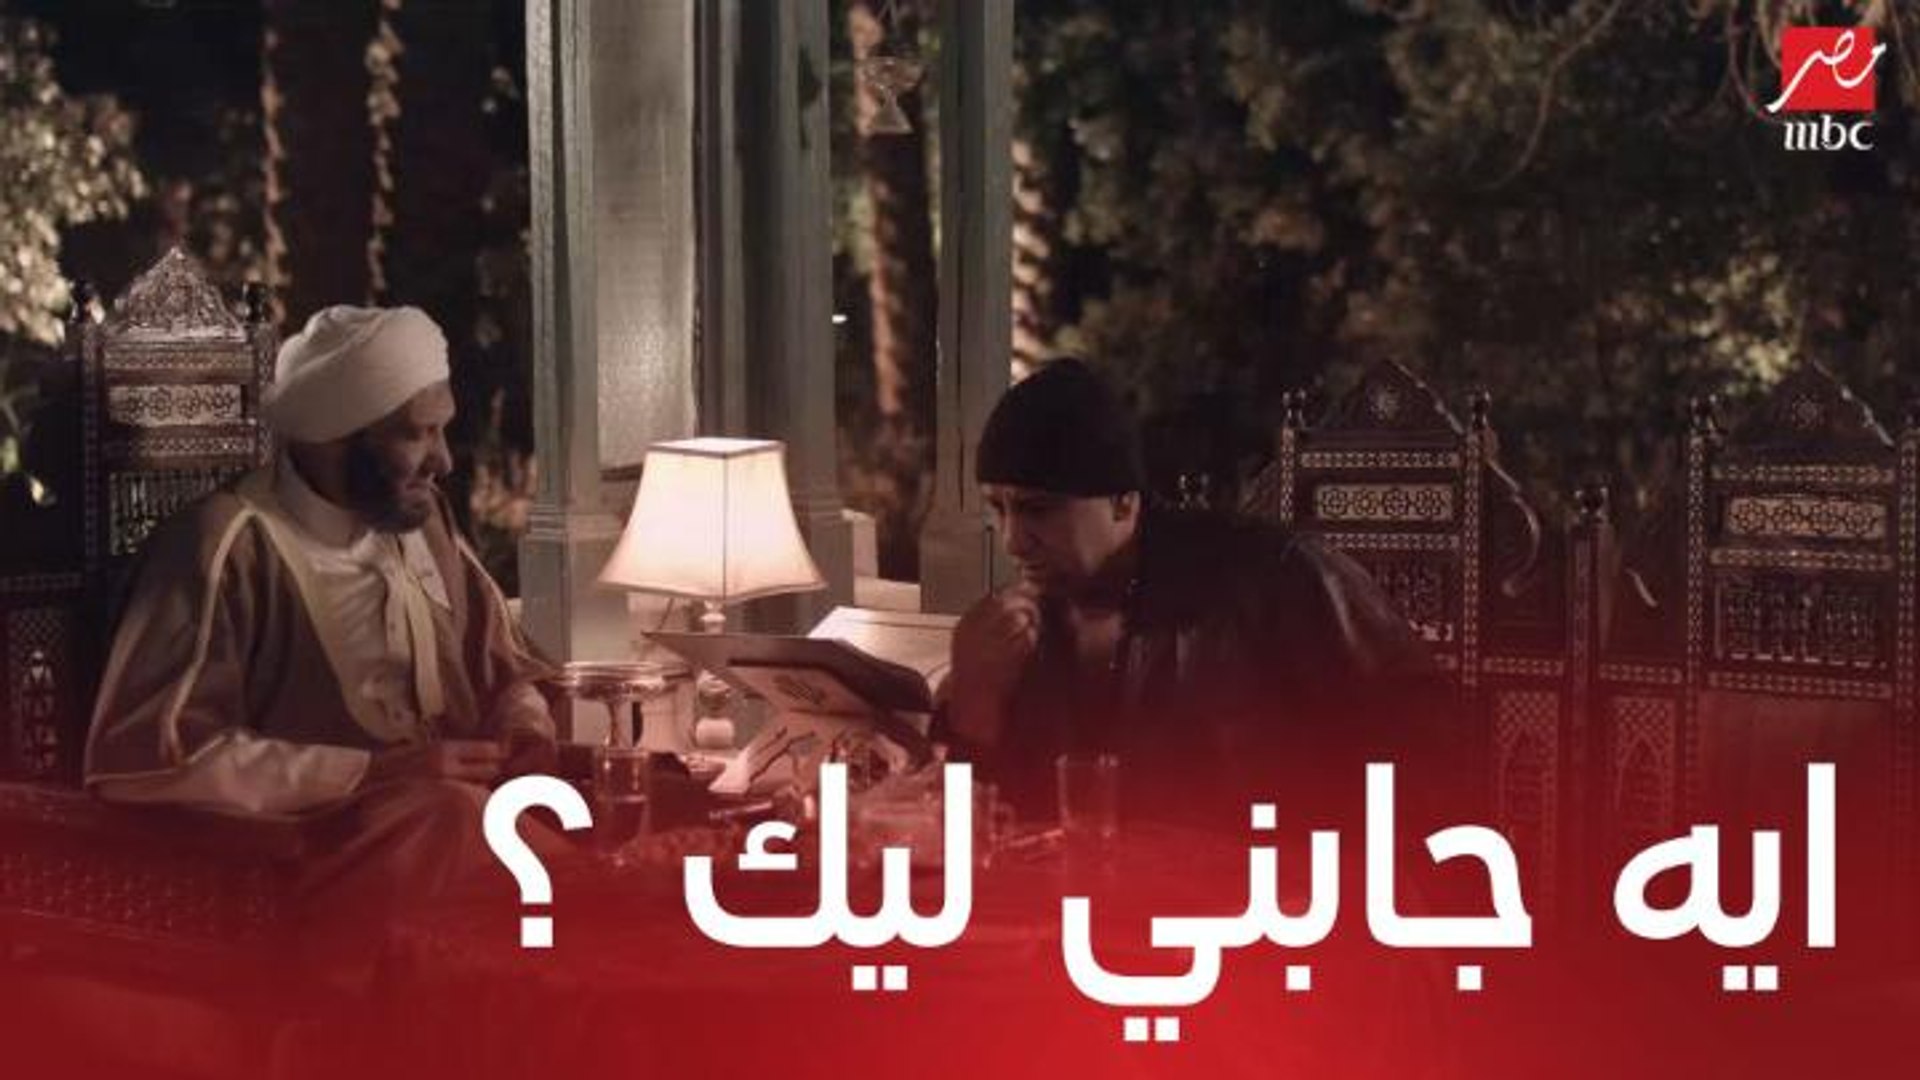 مسلسل مولانا العاشق | الحلقة 11 | كراكون حذر الشيخ من مؤامرة للتخلص منه  والدموع غلبته - فيديو Dailymotion